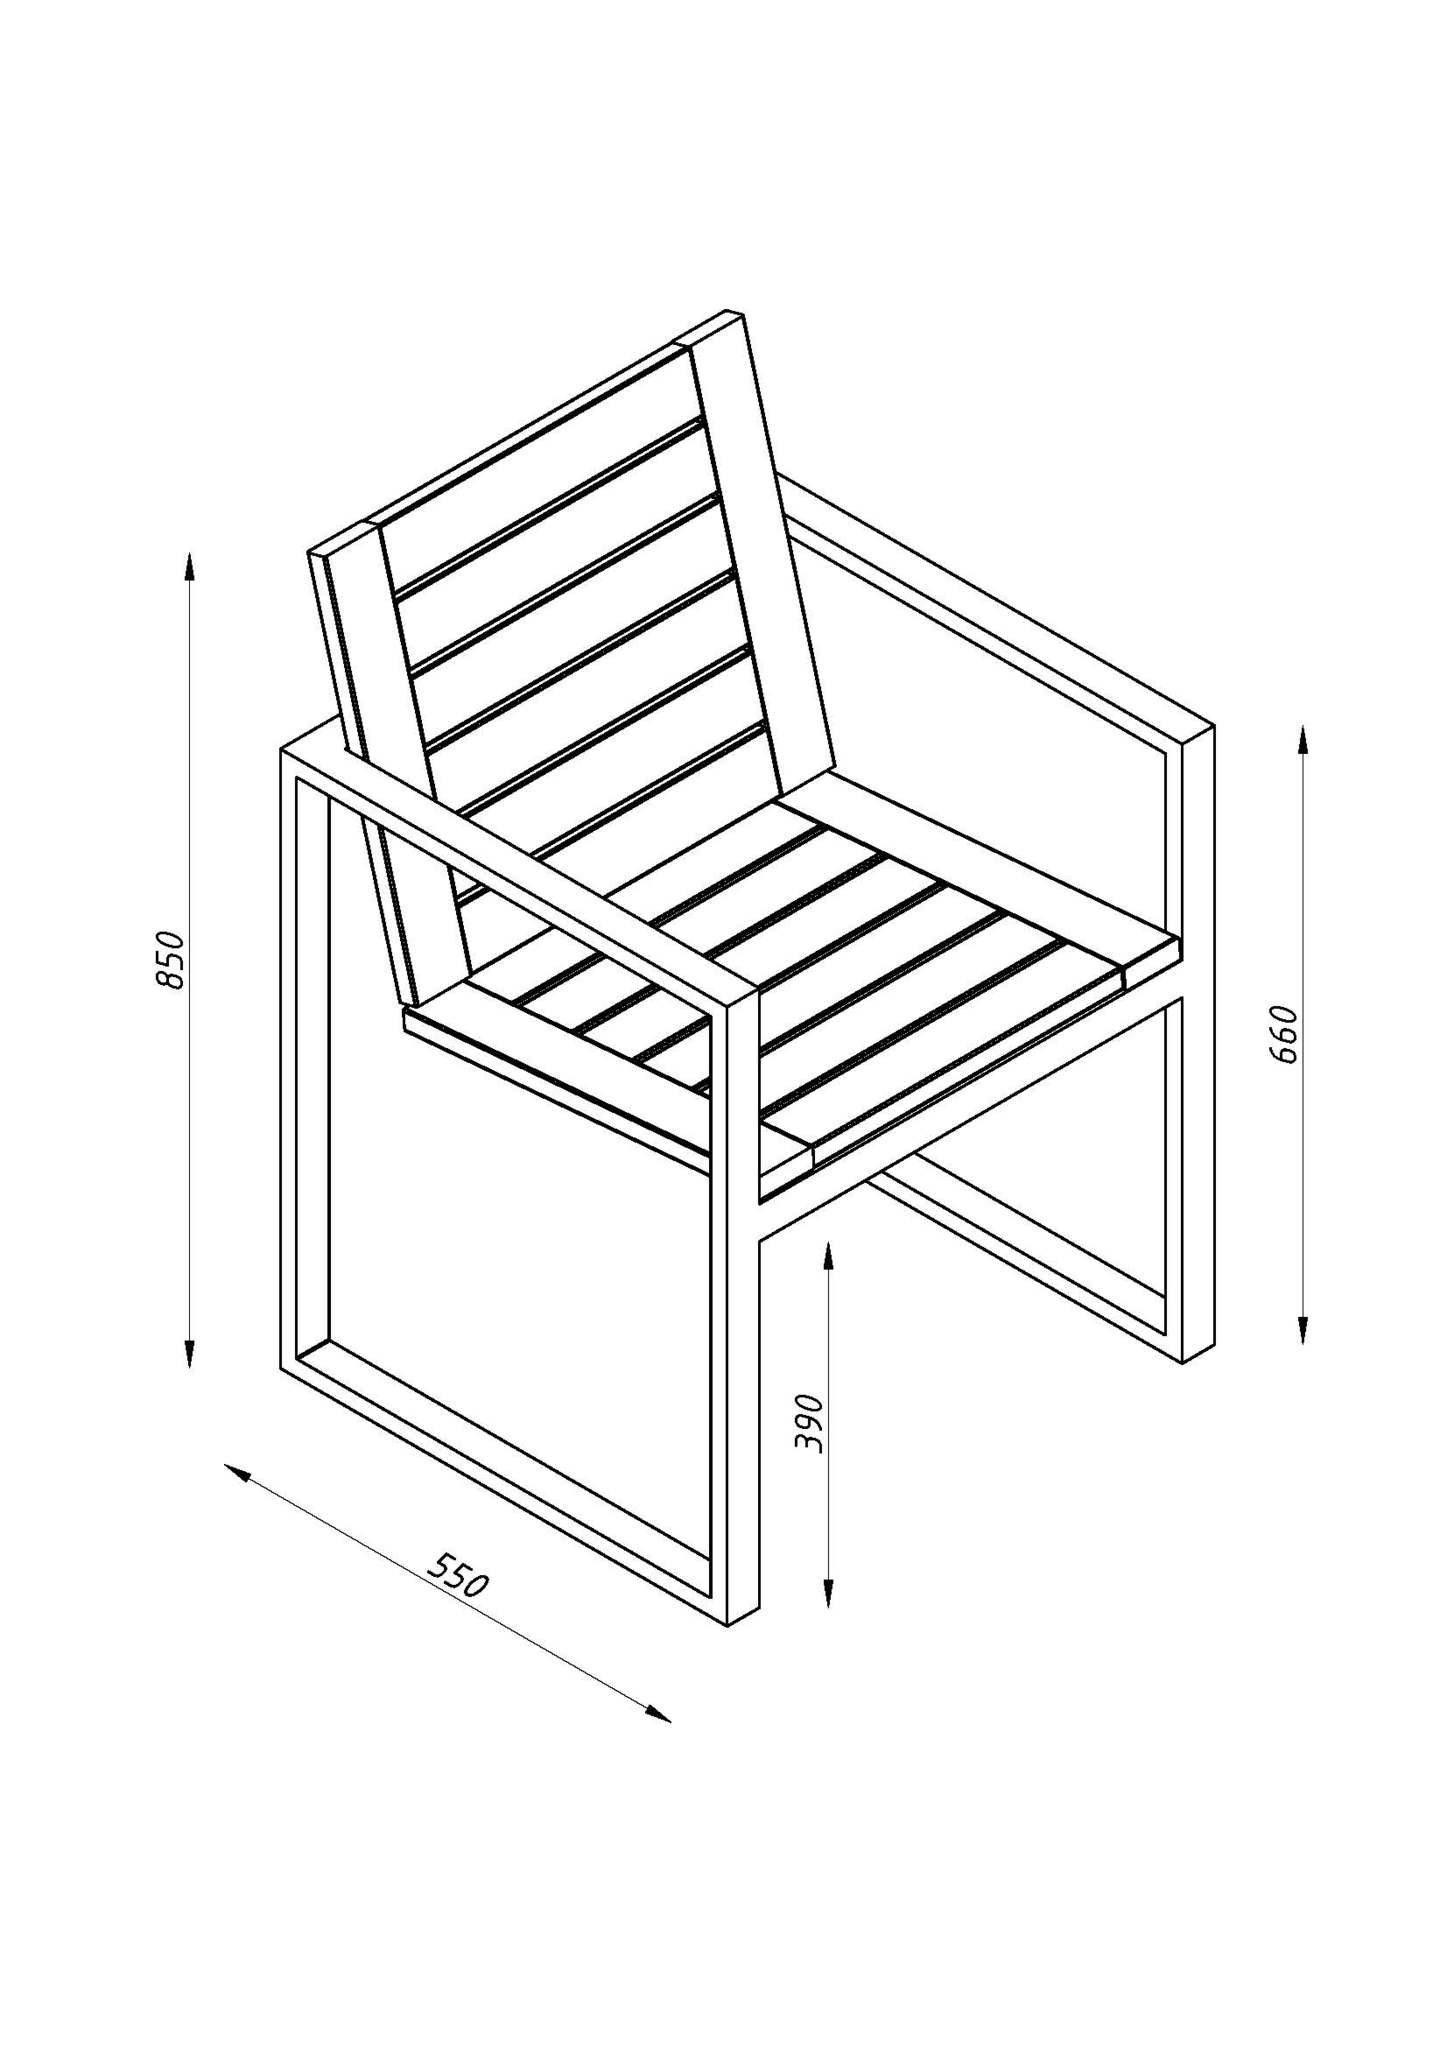 Схематичное изображение стула вид сверху